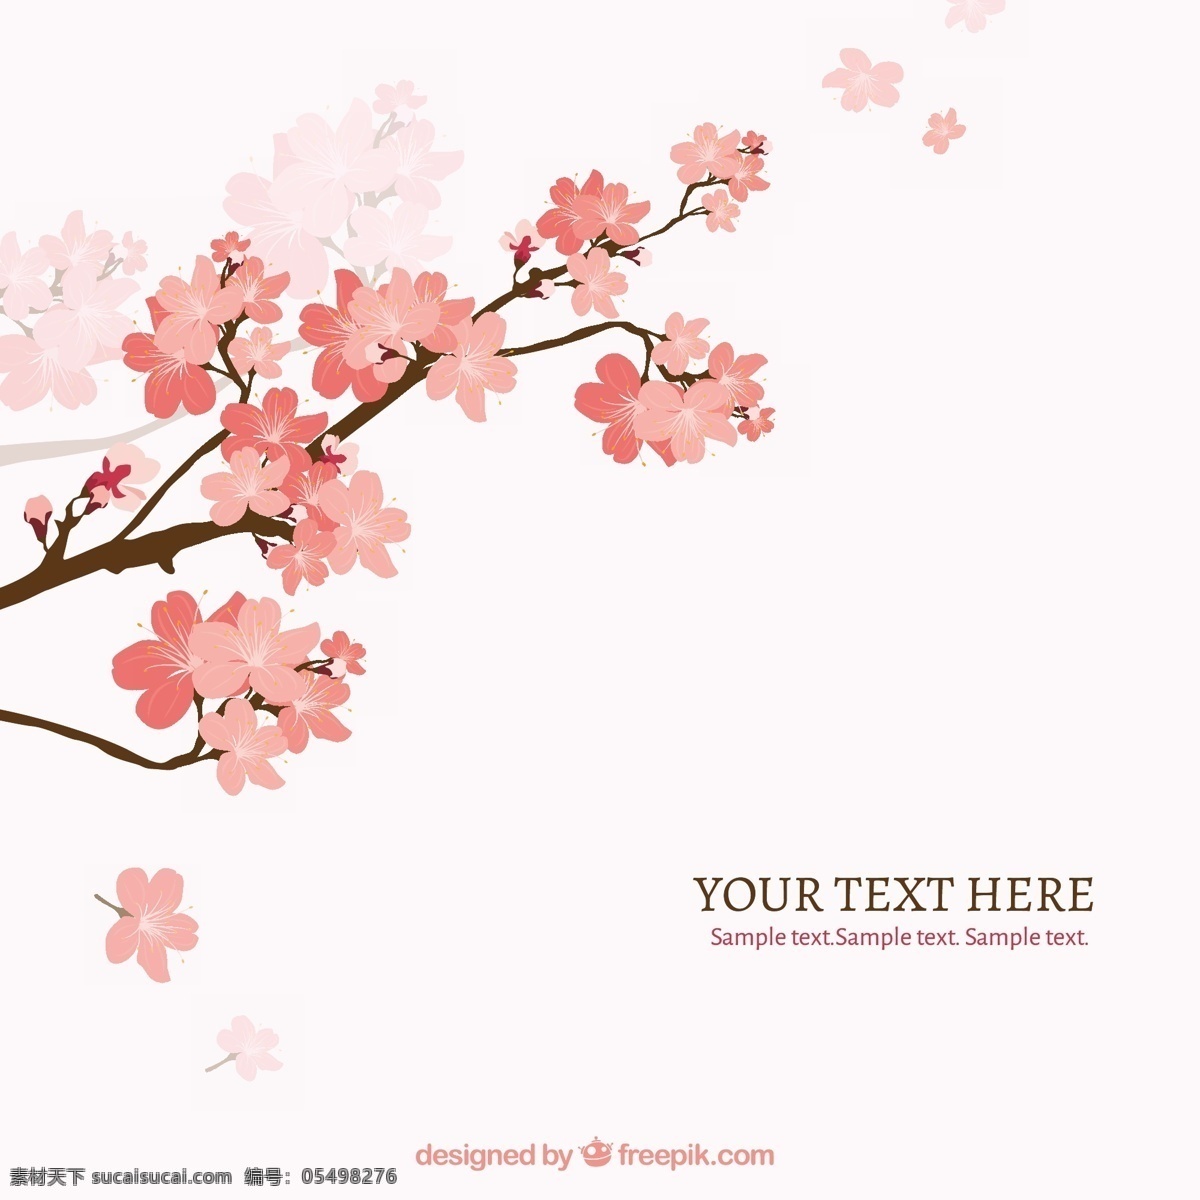 樱花图案背景 背景 春天 粉红色 日本樱花 开花 日本 花卉 樱桃 鲜花 传统 分支机构 树枝 樱花